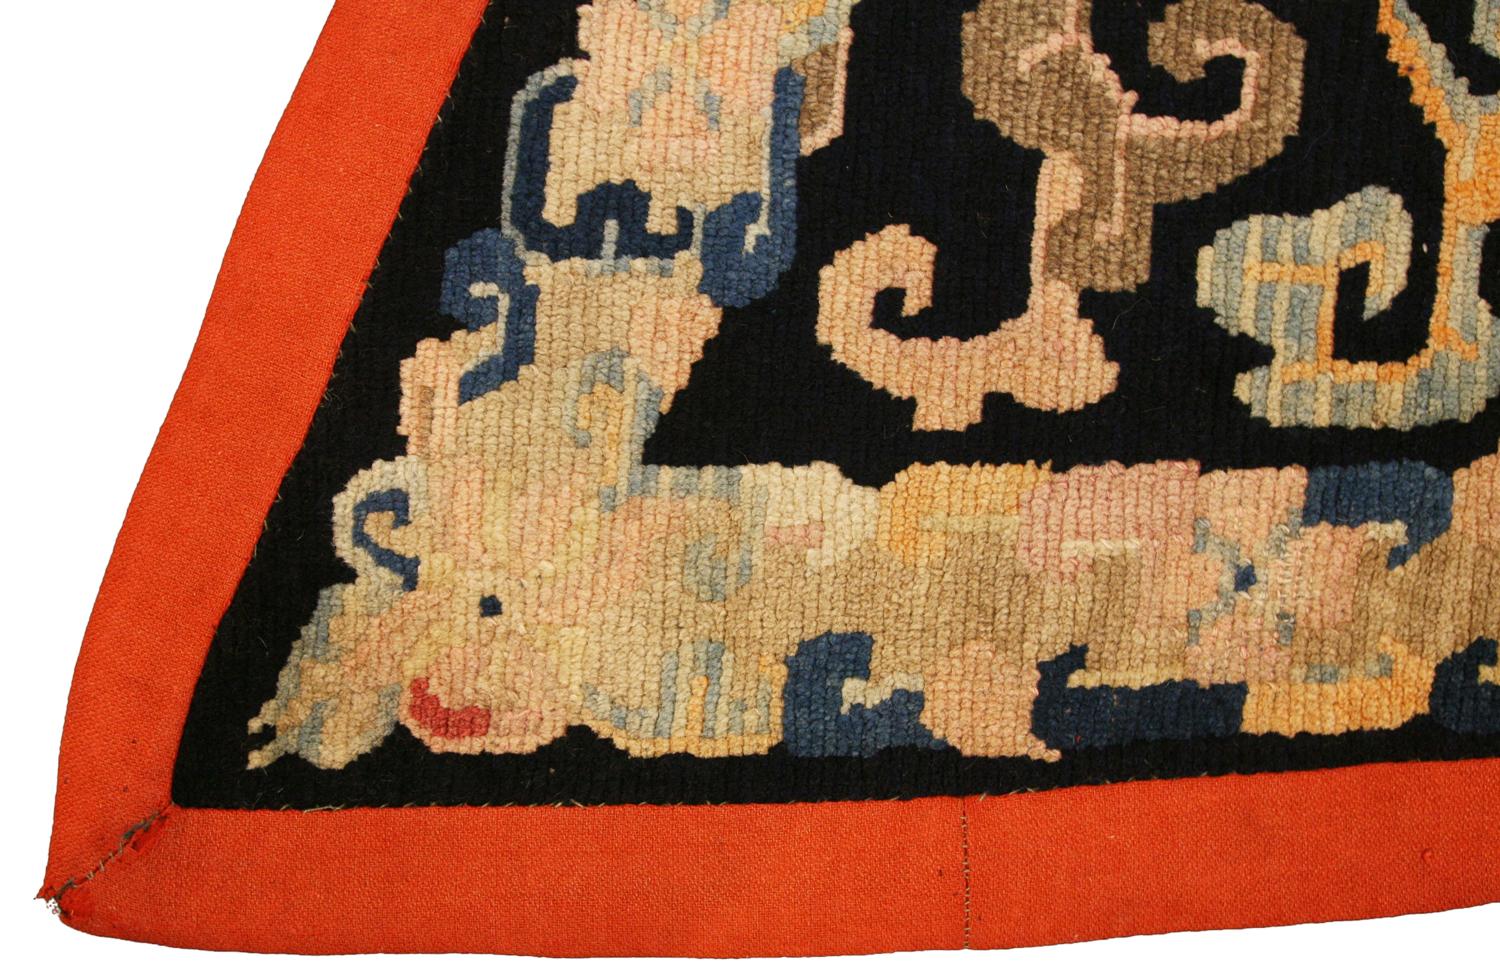 Il s'agit d'une ancienne couverture de cheval tibétaine tissée au cours du dernier quart du 19e siècle, entre 1880 et 1900. Elle mesure 107 x 70 cm. Le champ est orné d'une seule grande fleur de lotus avec des vignes saillantes sur un fond noir qui